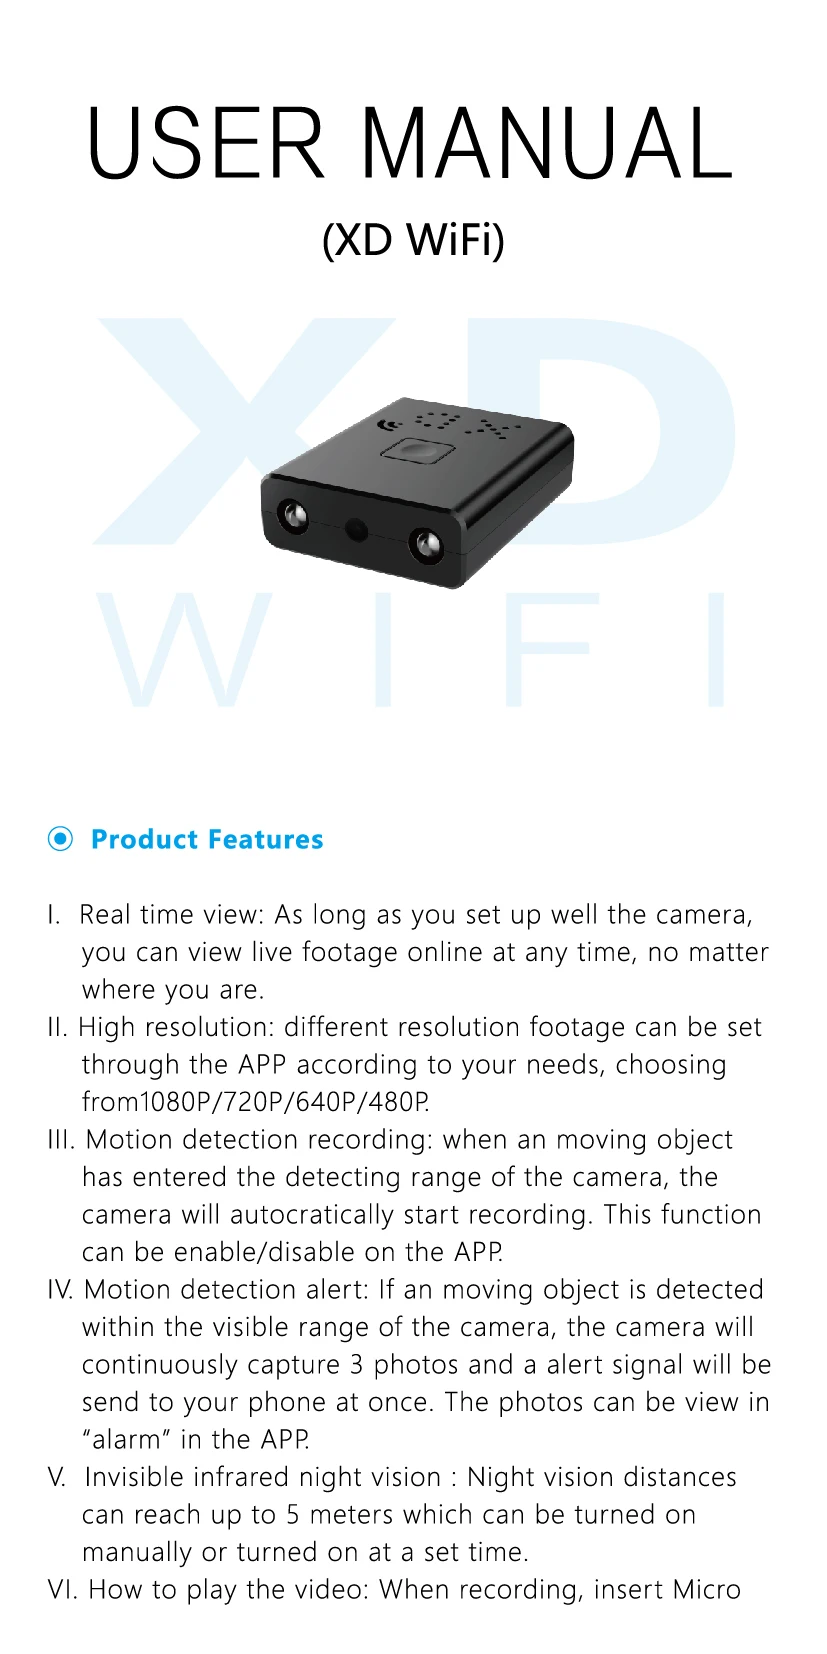 24 часа работы Wi-Fi мини-камера HD 1080P для домашней безопасности ИК ночного видения беспроводной видео детектор движения портативная микро-камера